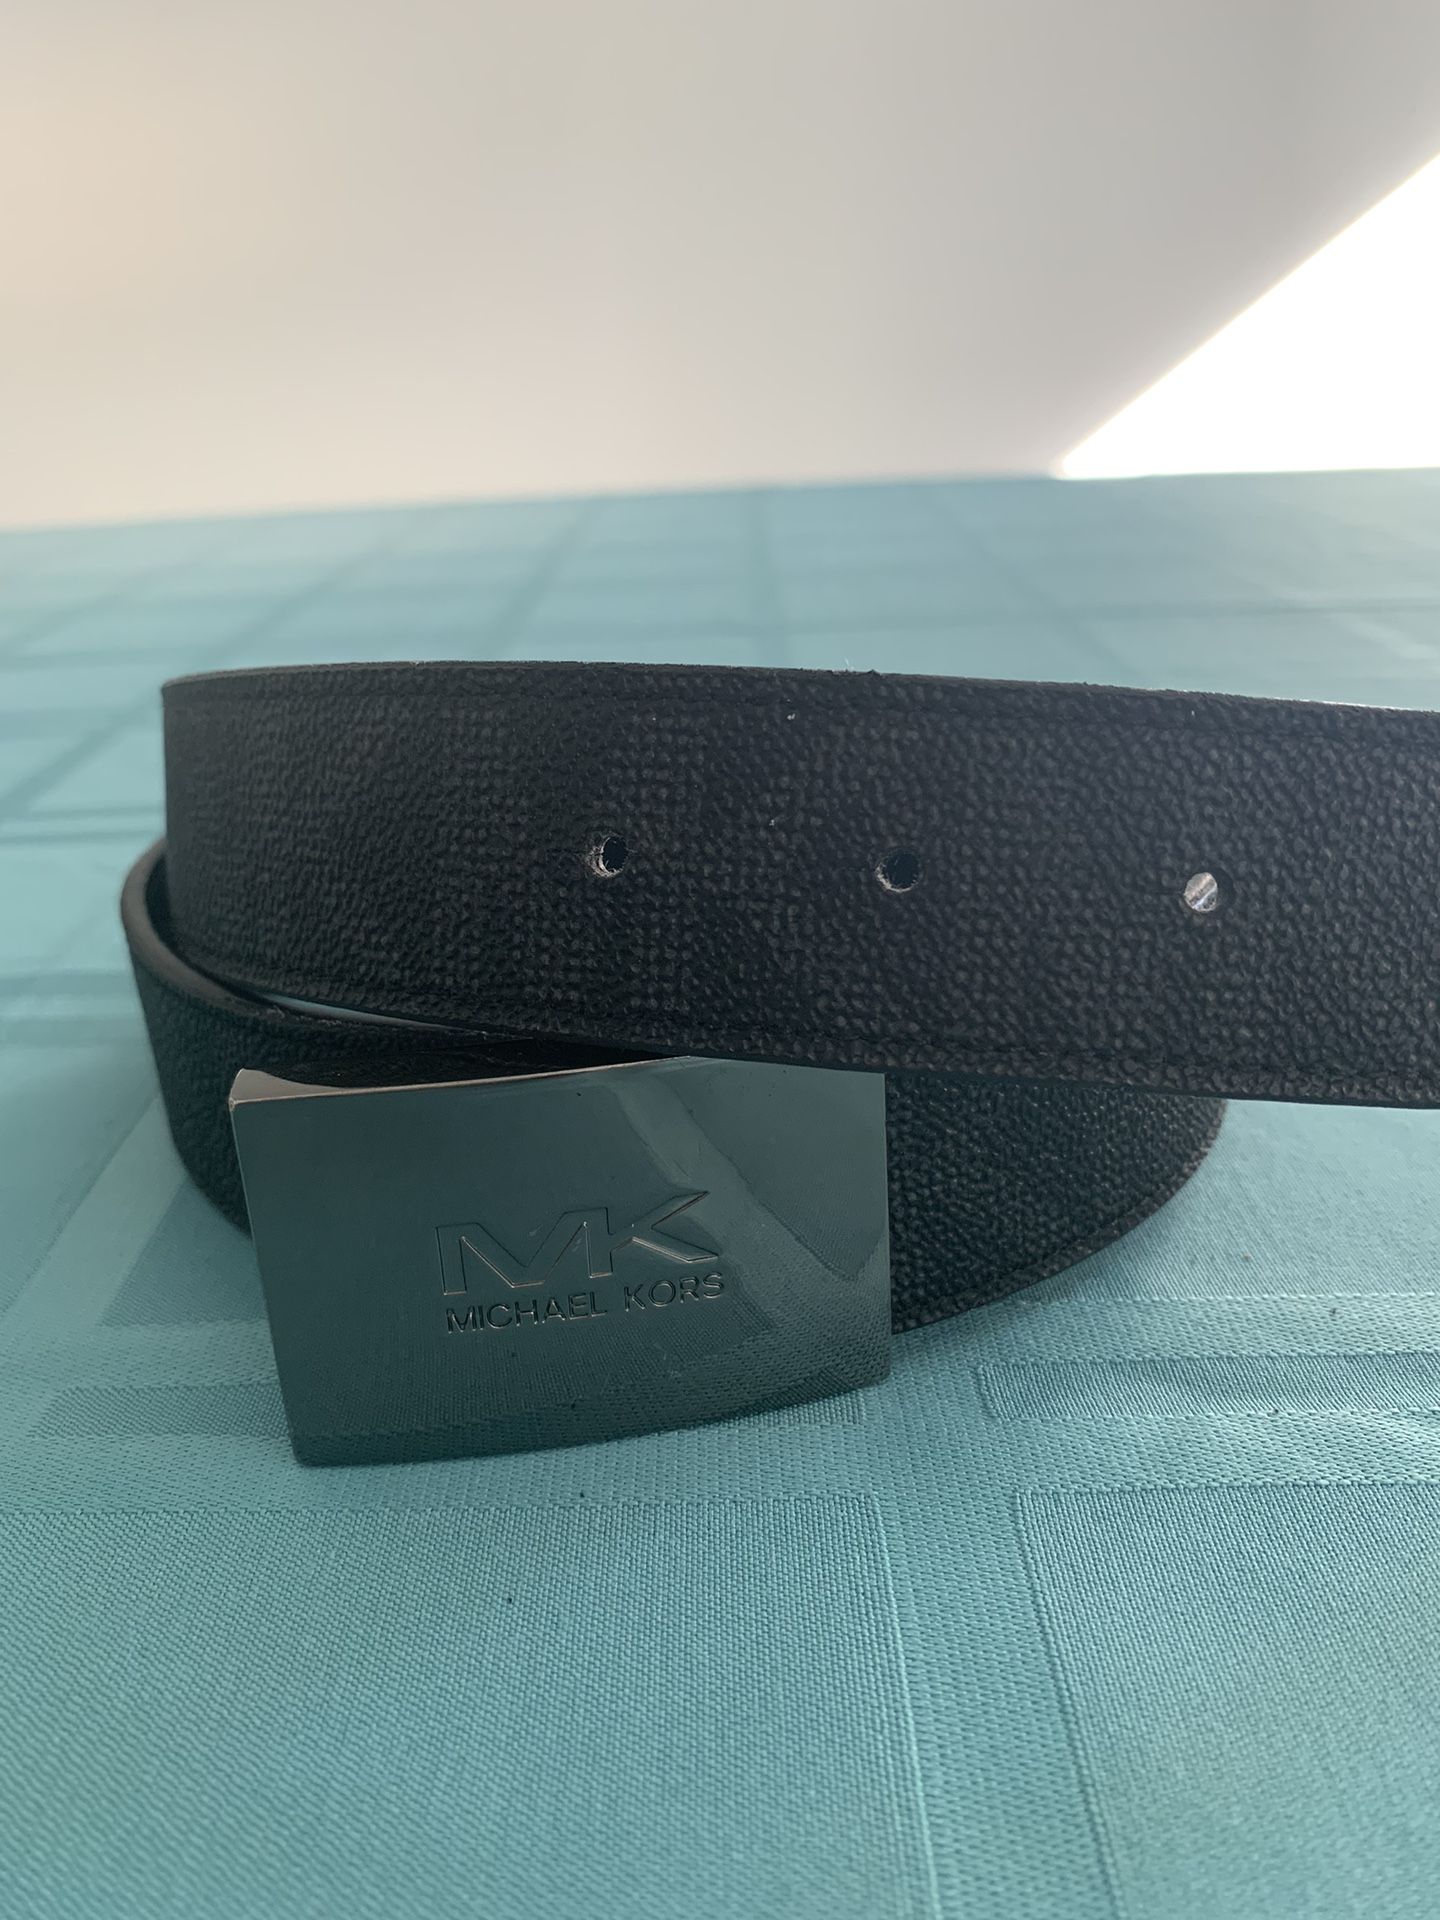 Michael Kors Men's Cut to Fit Reversible PVC Leather MK Plaque Belt, black